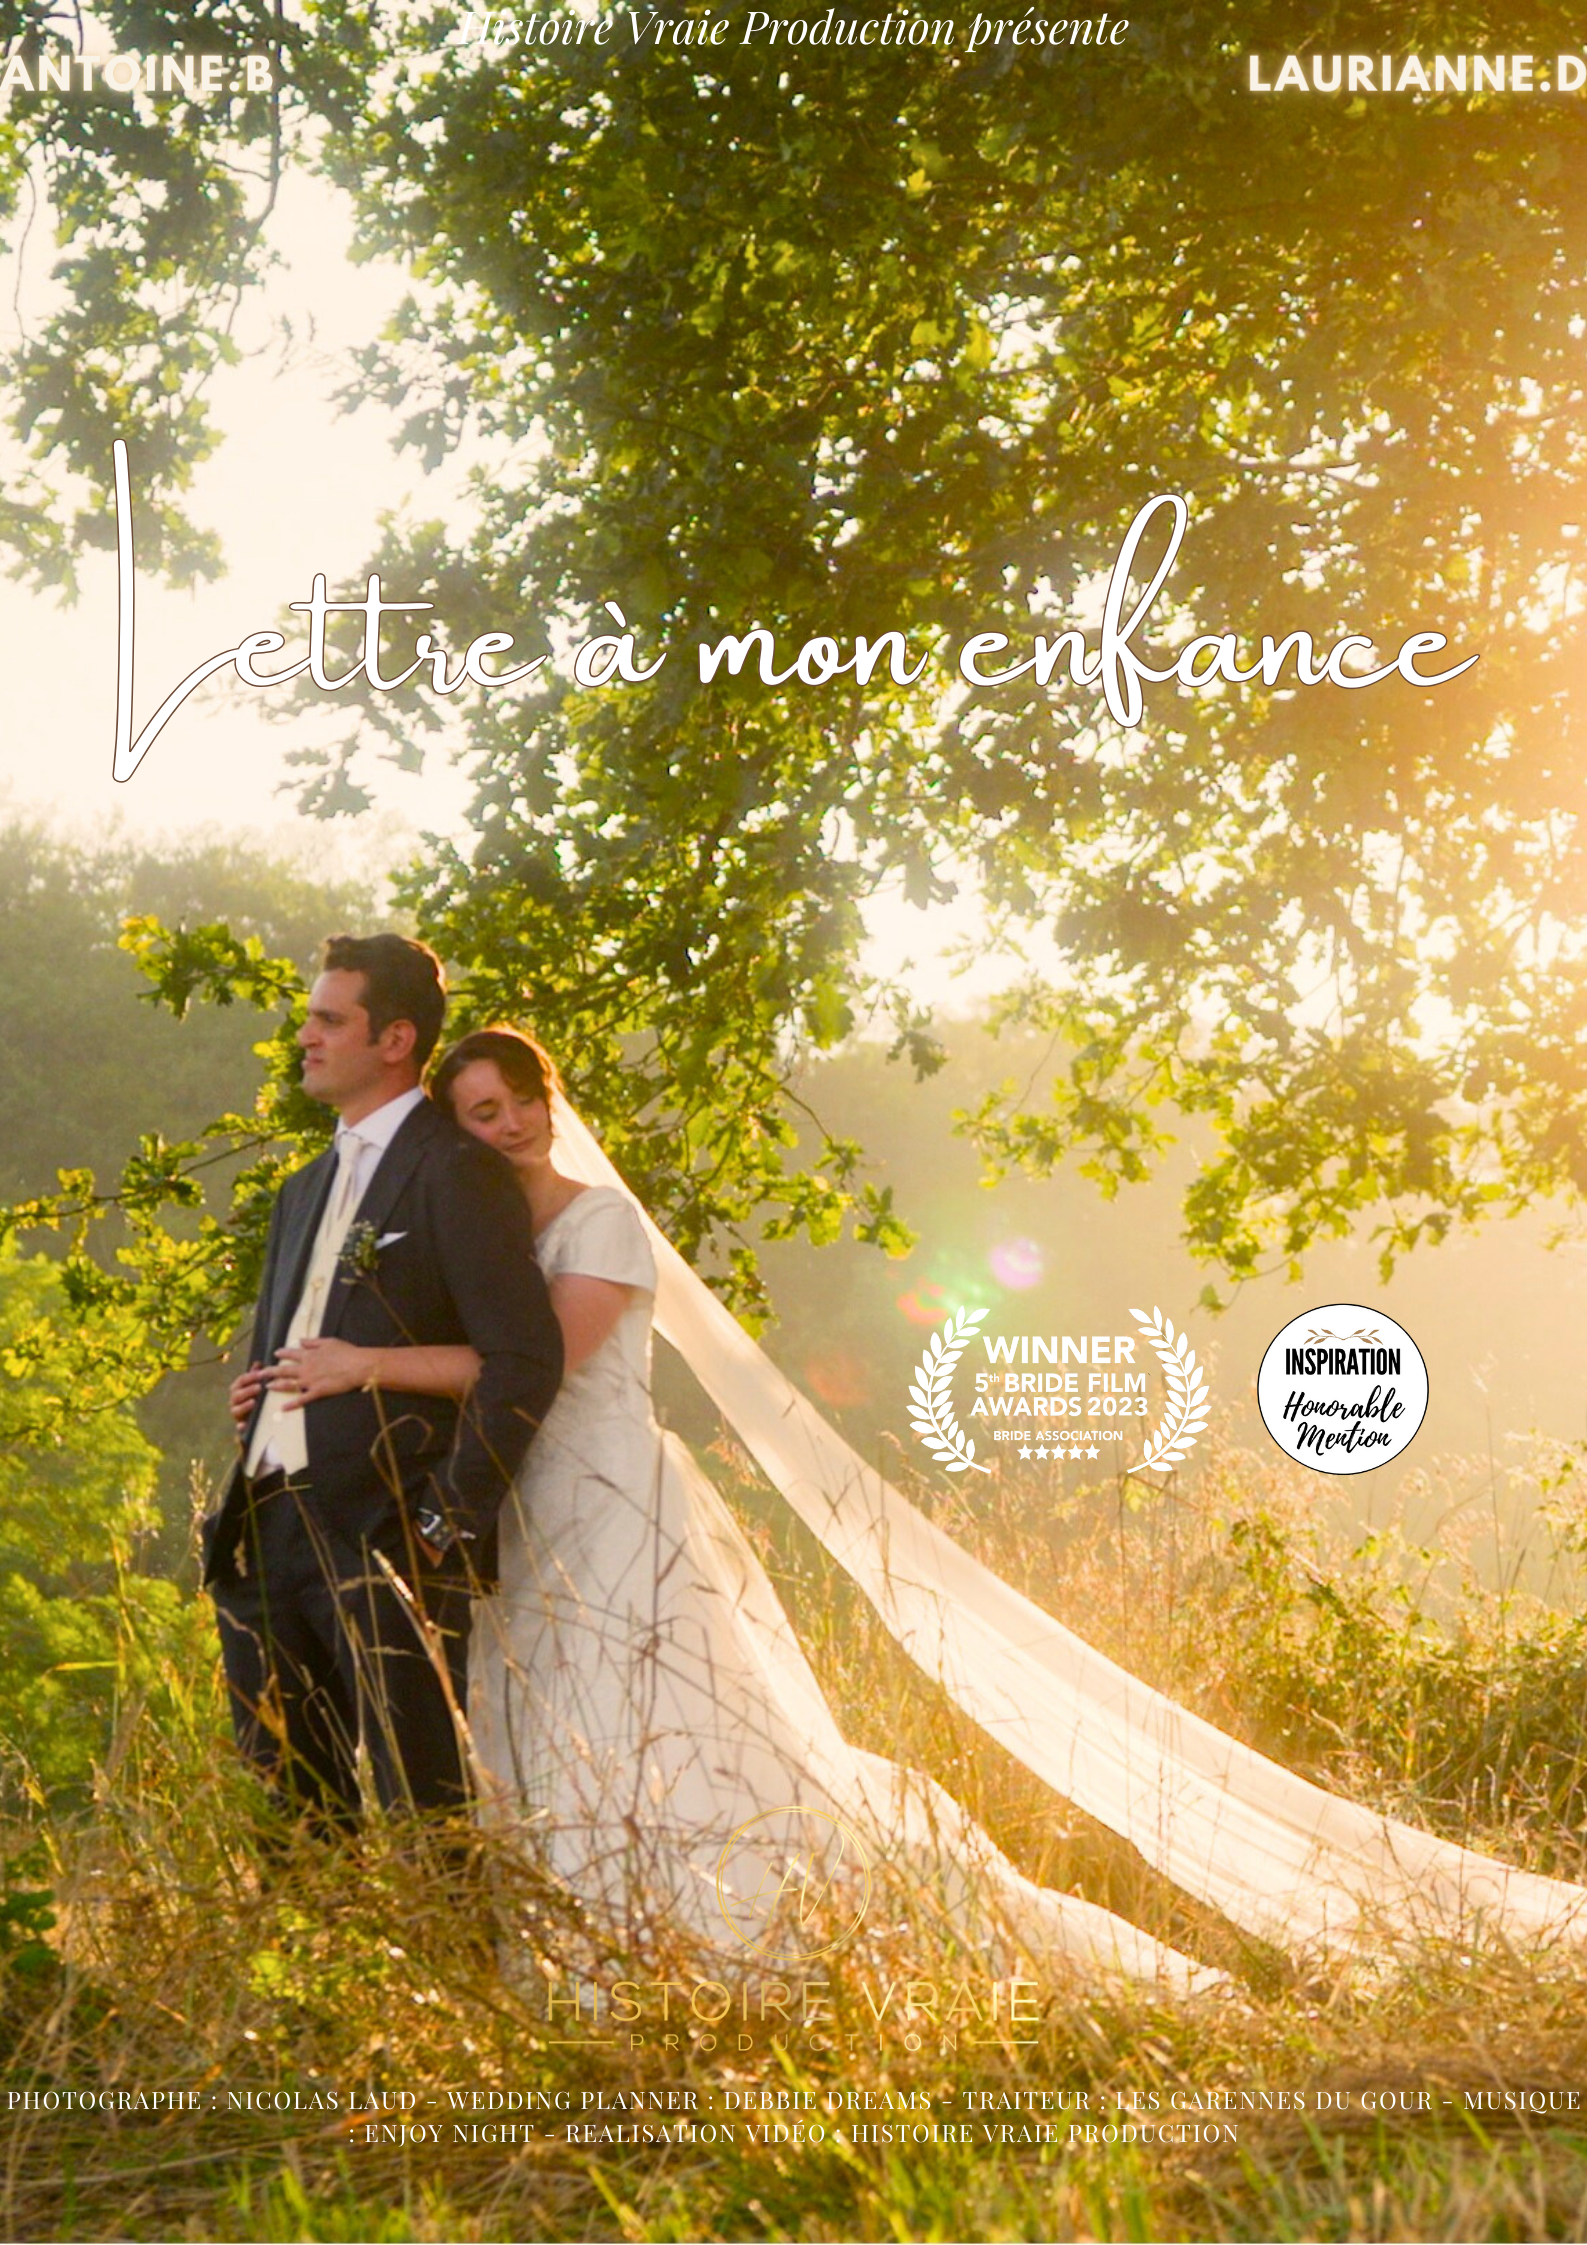 Affiche de la vidéo / du film de mariage : Lettre à mon enfance